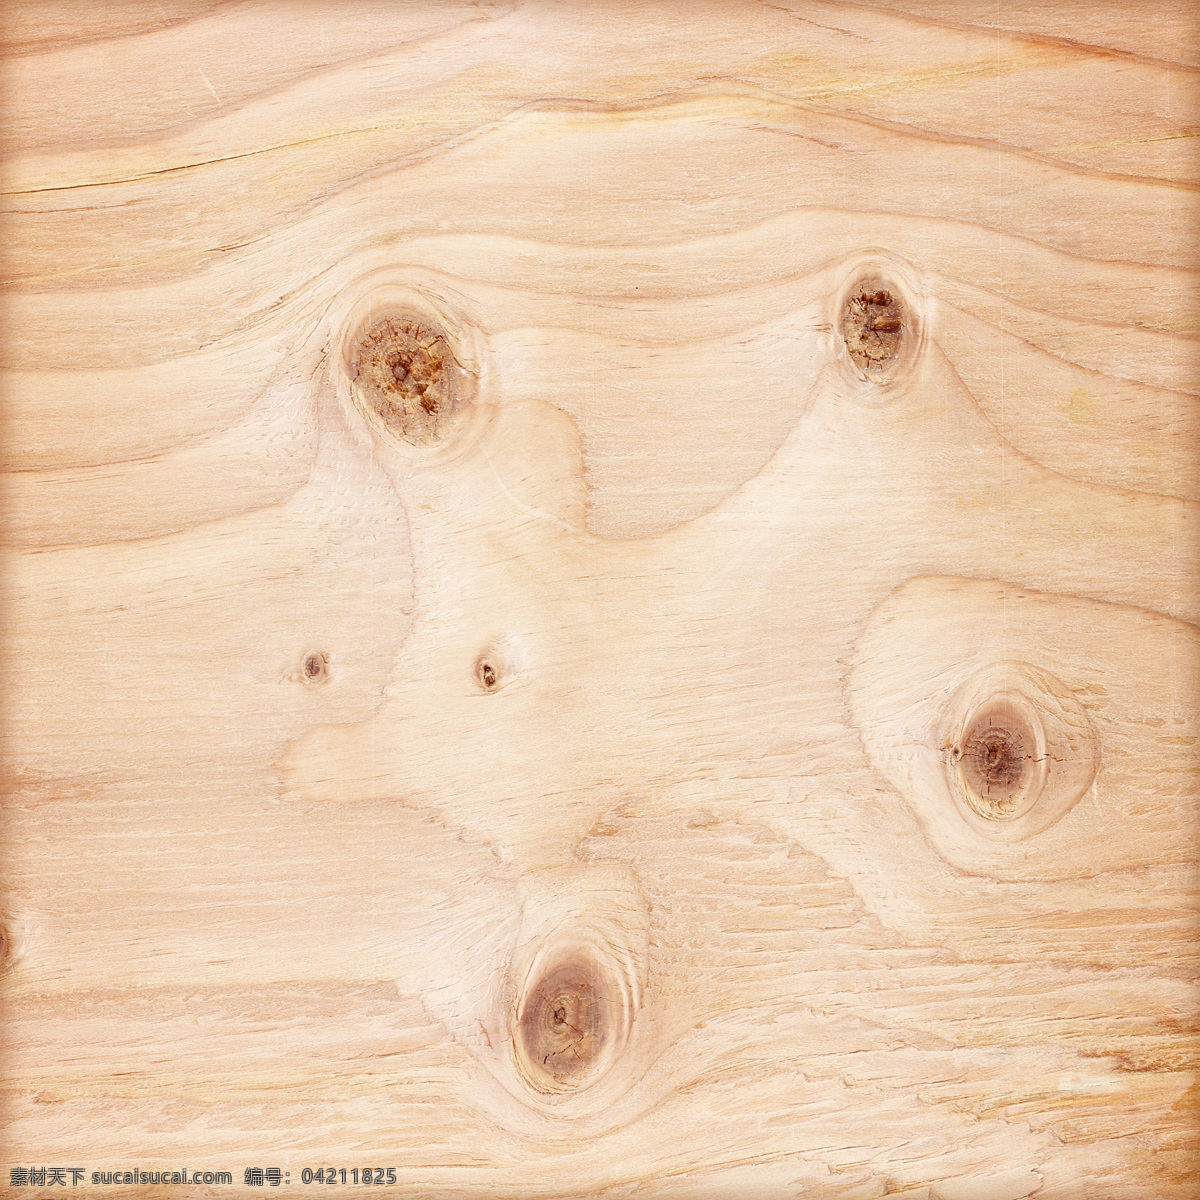 木纹背景 木板背景 木板材质 贴图 木质纹理 背景底纹 木板 木纹 背景 高清 木地板 地板 木头 黄色